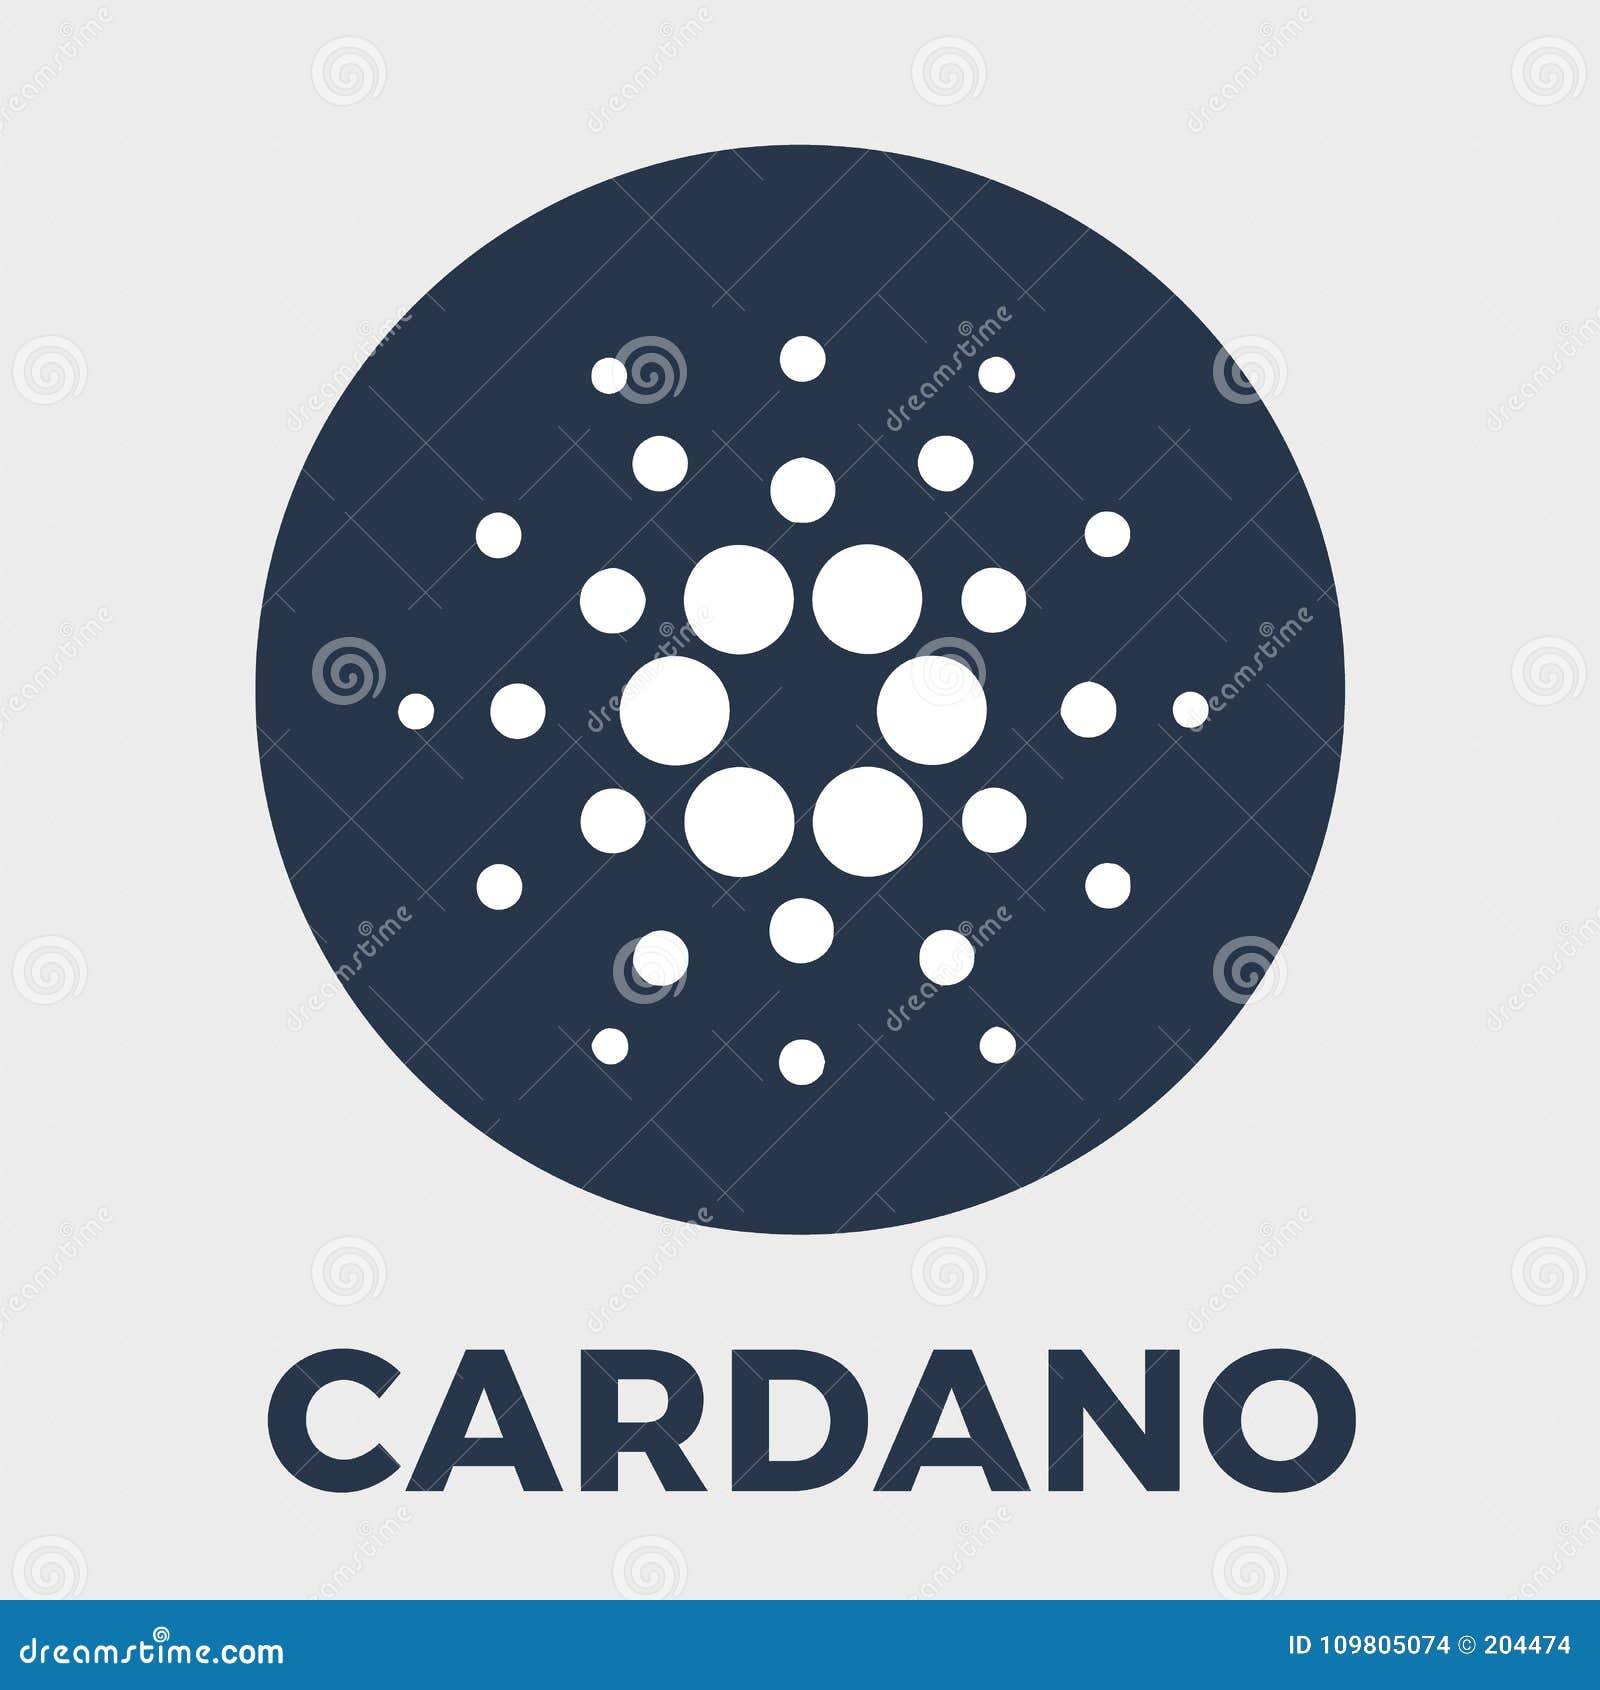 Cardano ( ADA) Price Prediction 2022Ethereum or Cardano - Coinmonks